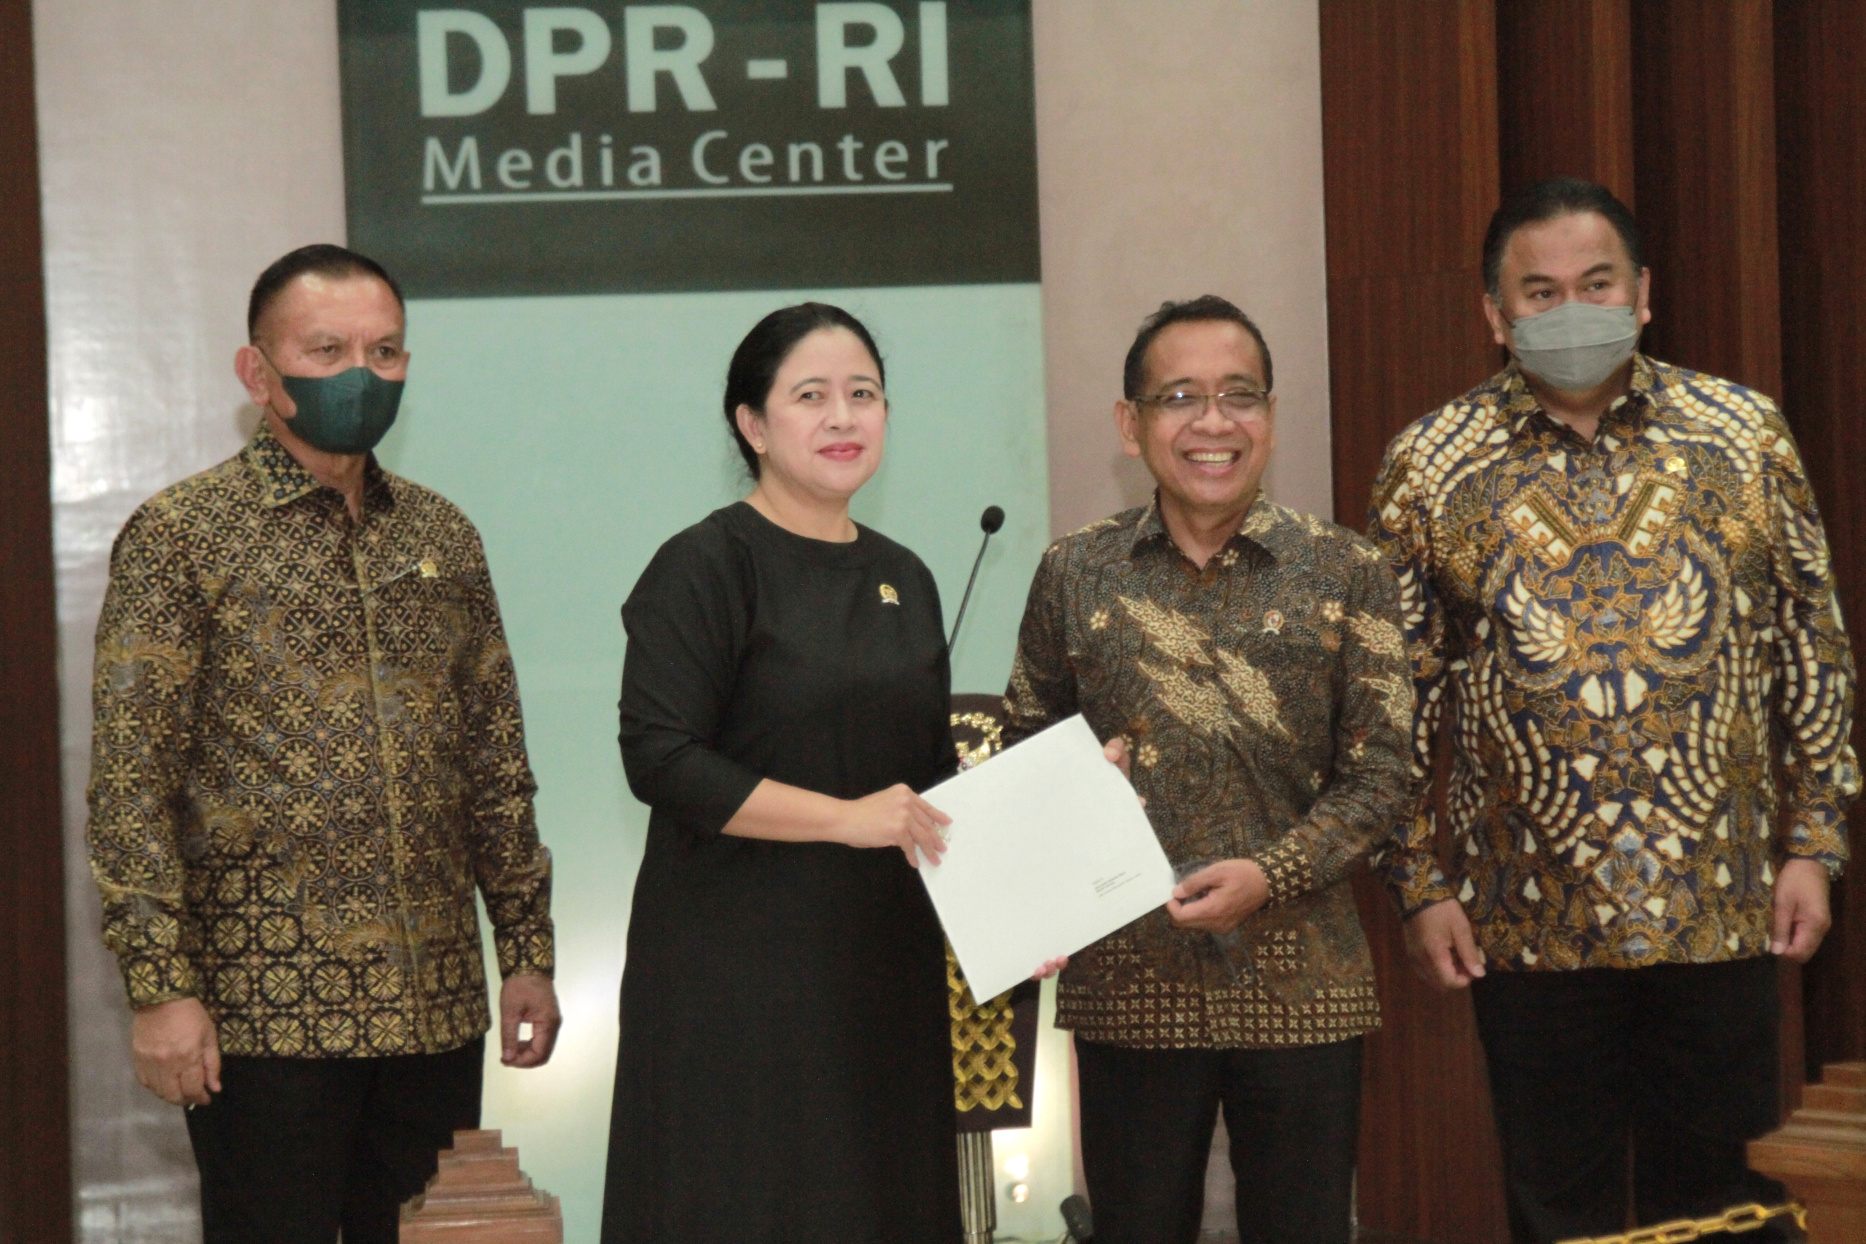 Ketua DPR RI Puan Maharani mengumumkan Calon Panglima TNI pengganti Andika Prakasa yakni Laksmana TNI Yudo Margono, Kepala Staf Angkatan Laut (KASAL) (Ashar/SinPo.id)